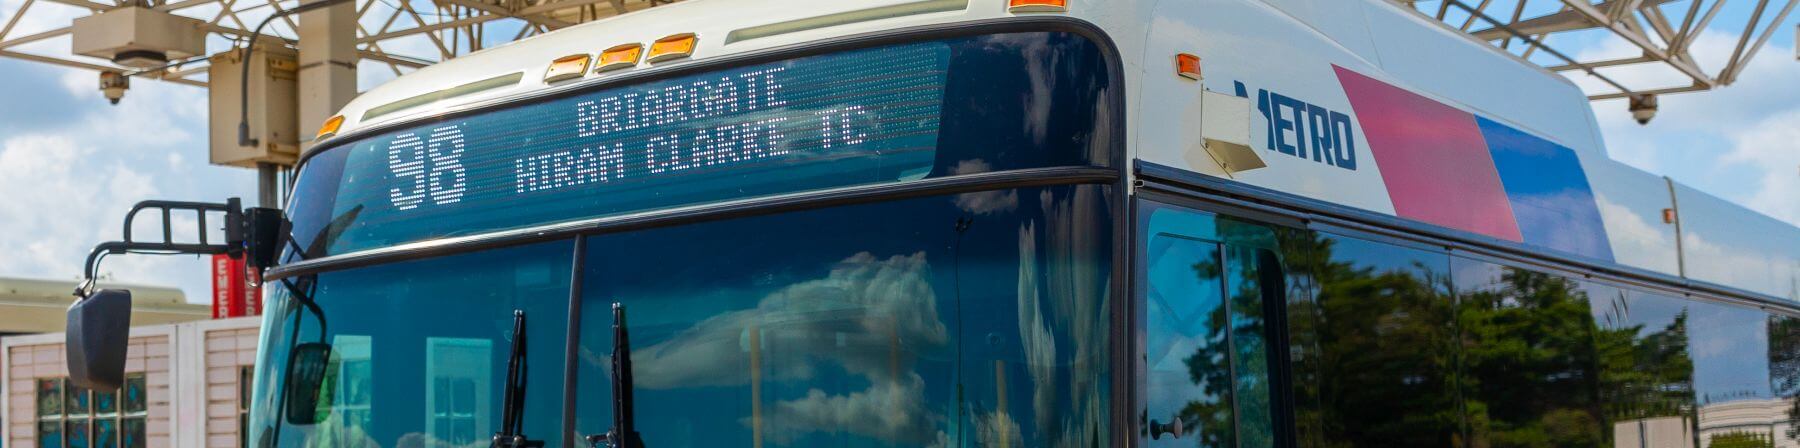 98 Briargate bus